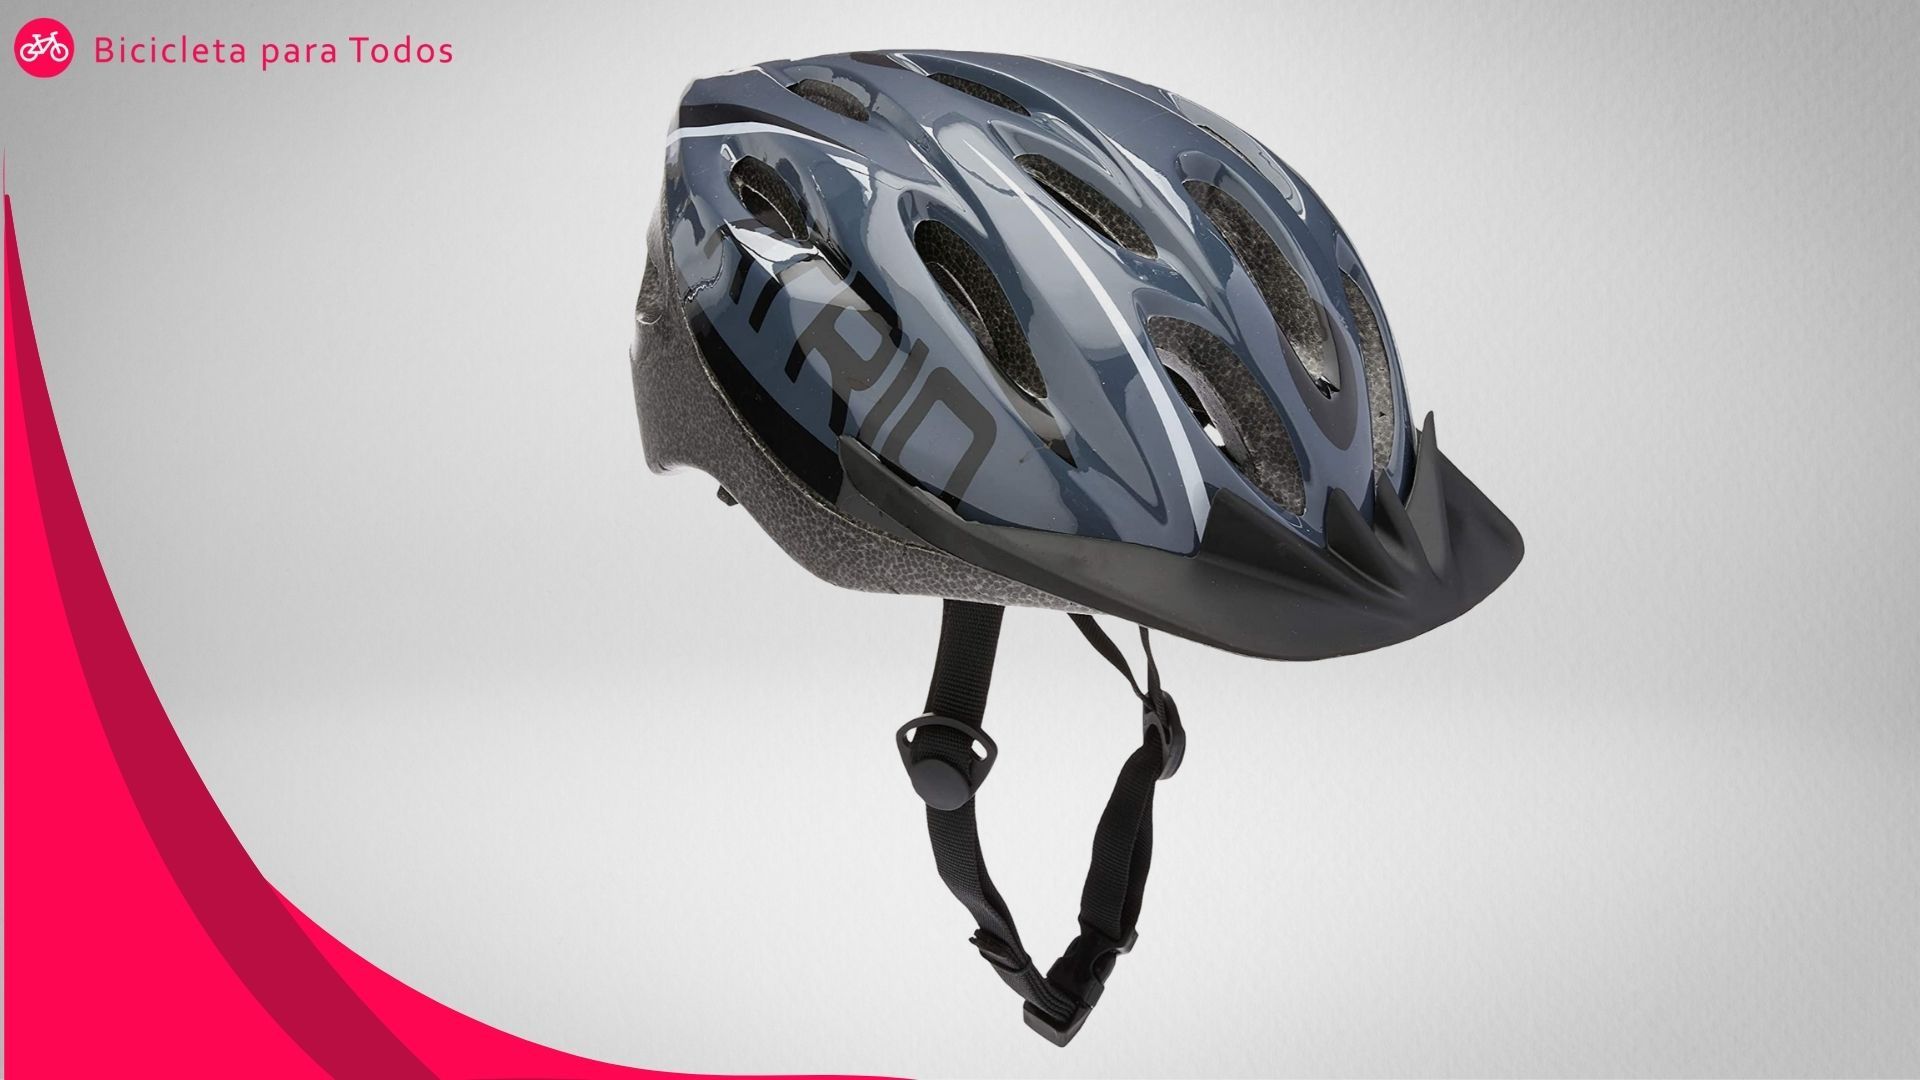 foto do capacete para ciclismo com viseira na cor prata